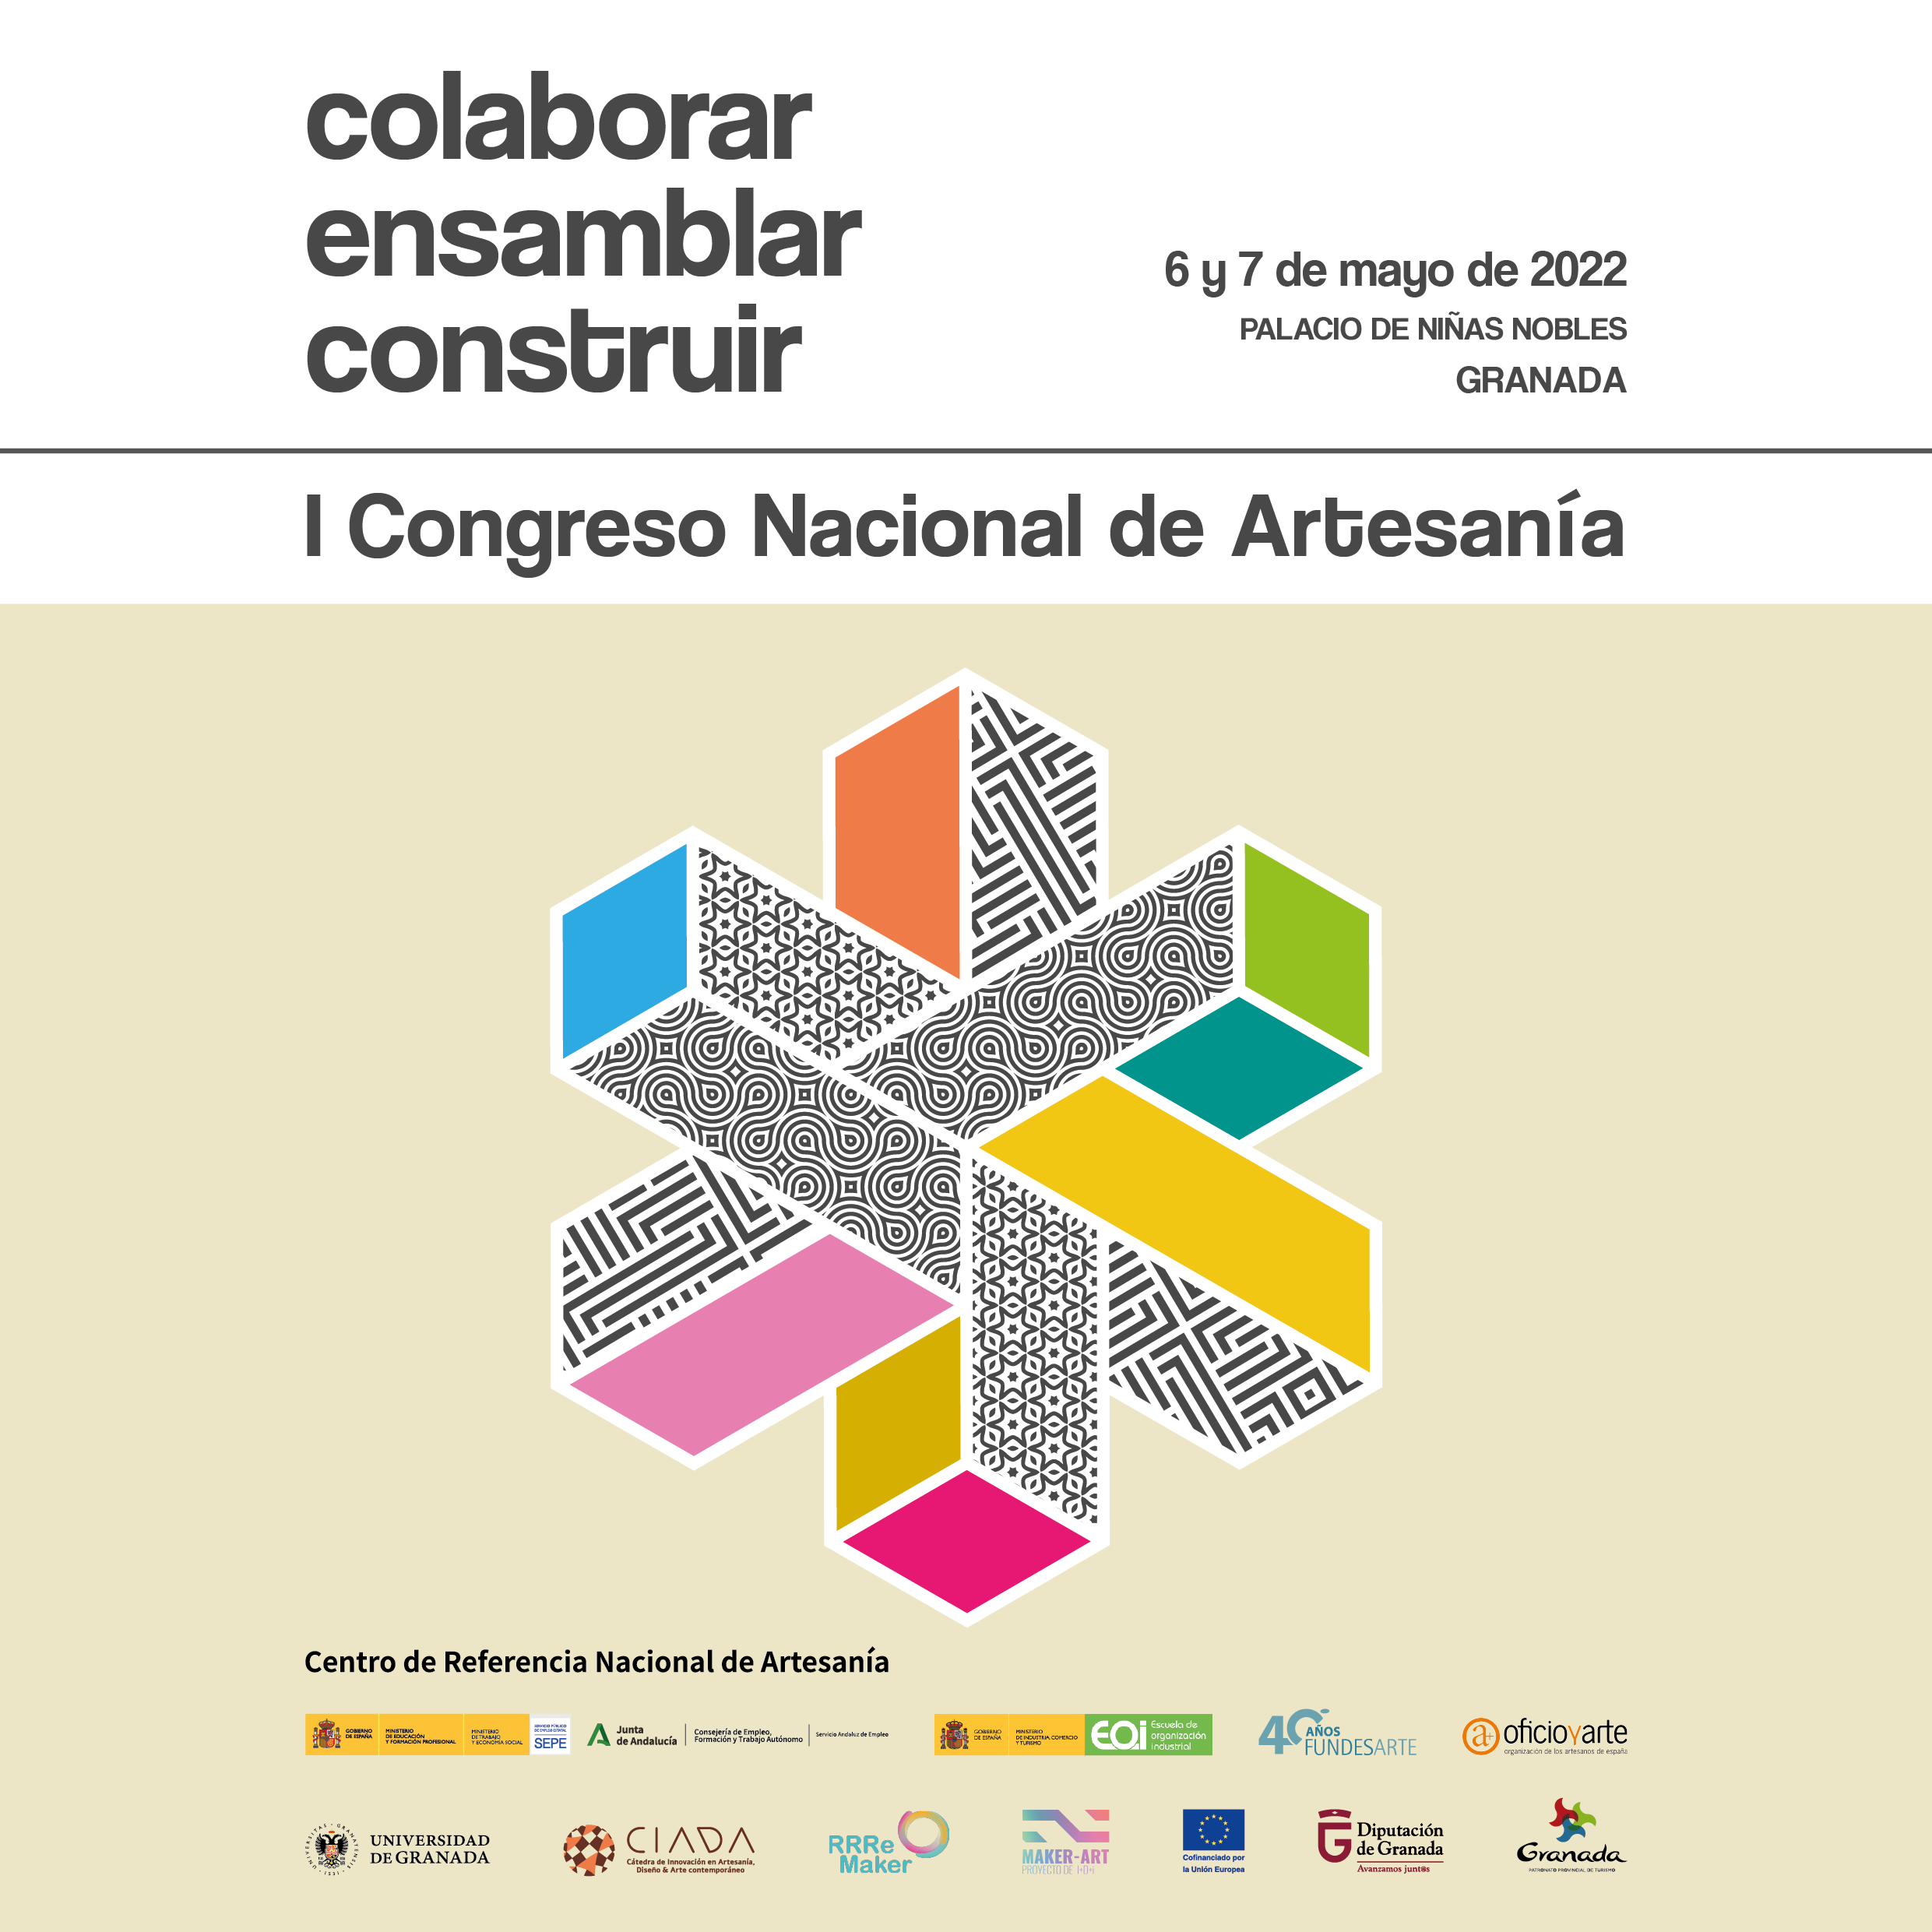 I Congreso Nacional de Artesanía de Granada bajo el lema ‘colaborar, ensamblar, construir’